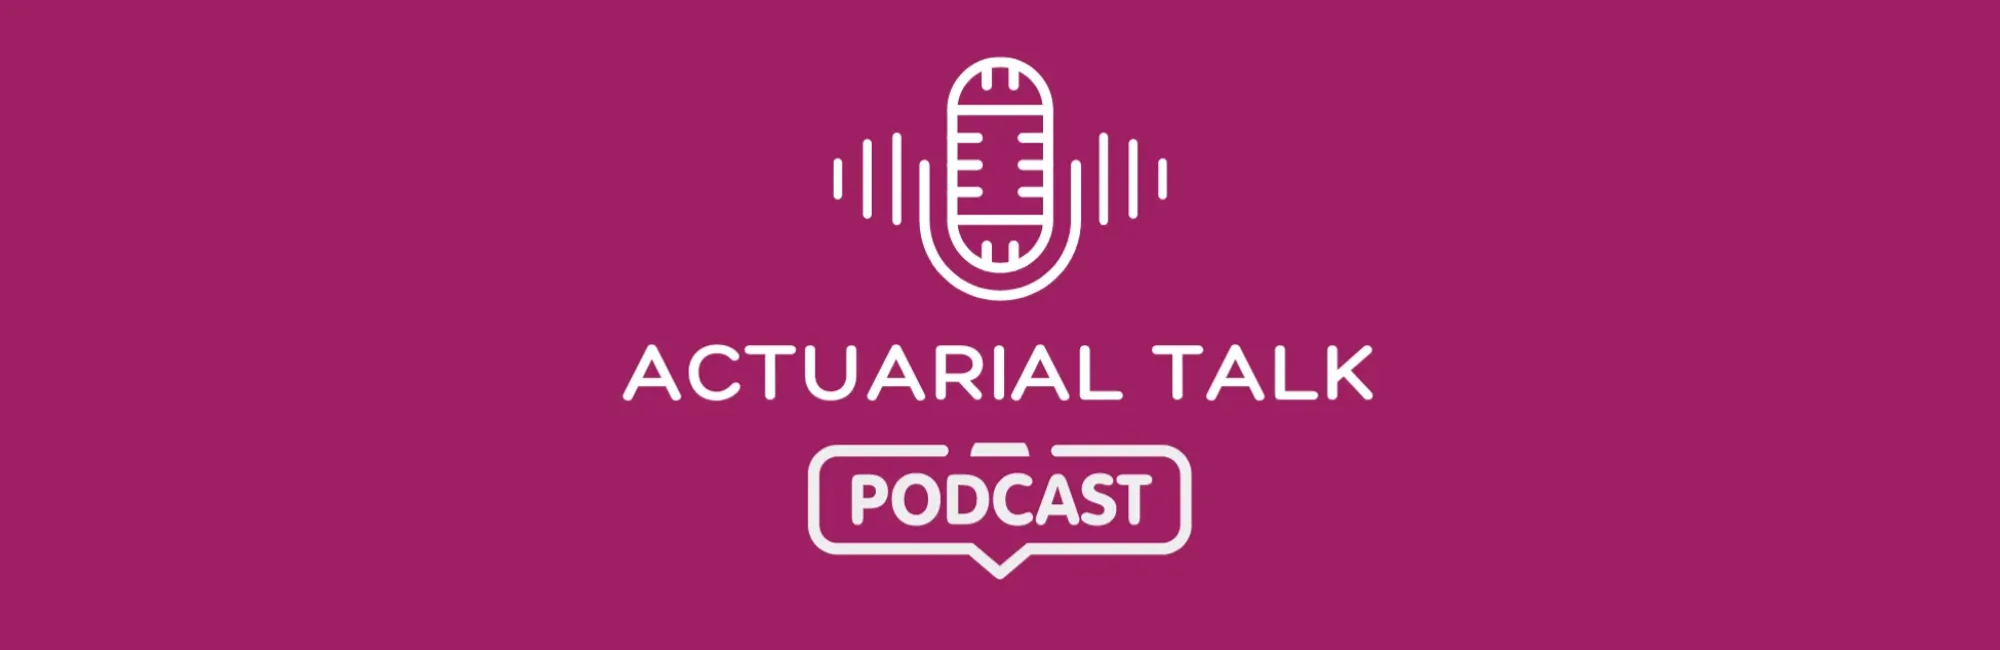 Actuarial talk podcast header 